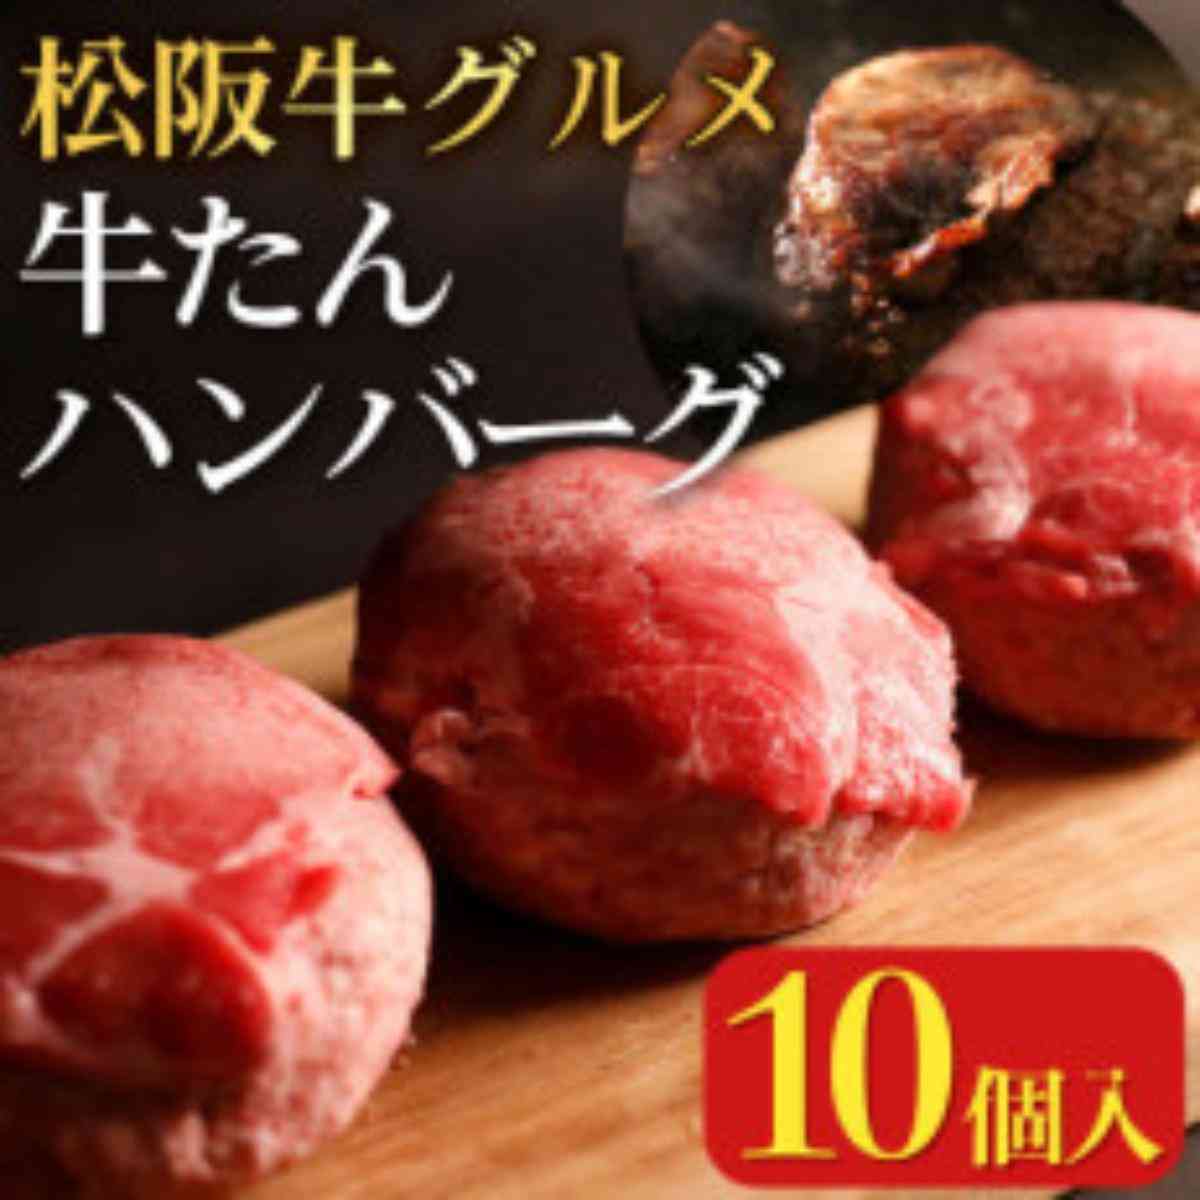 松阪牛グルメ 牛たんハンバーグ10個